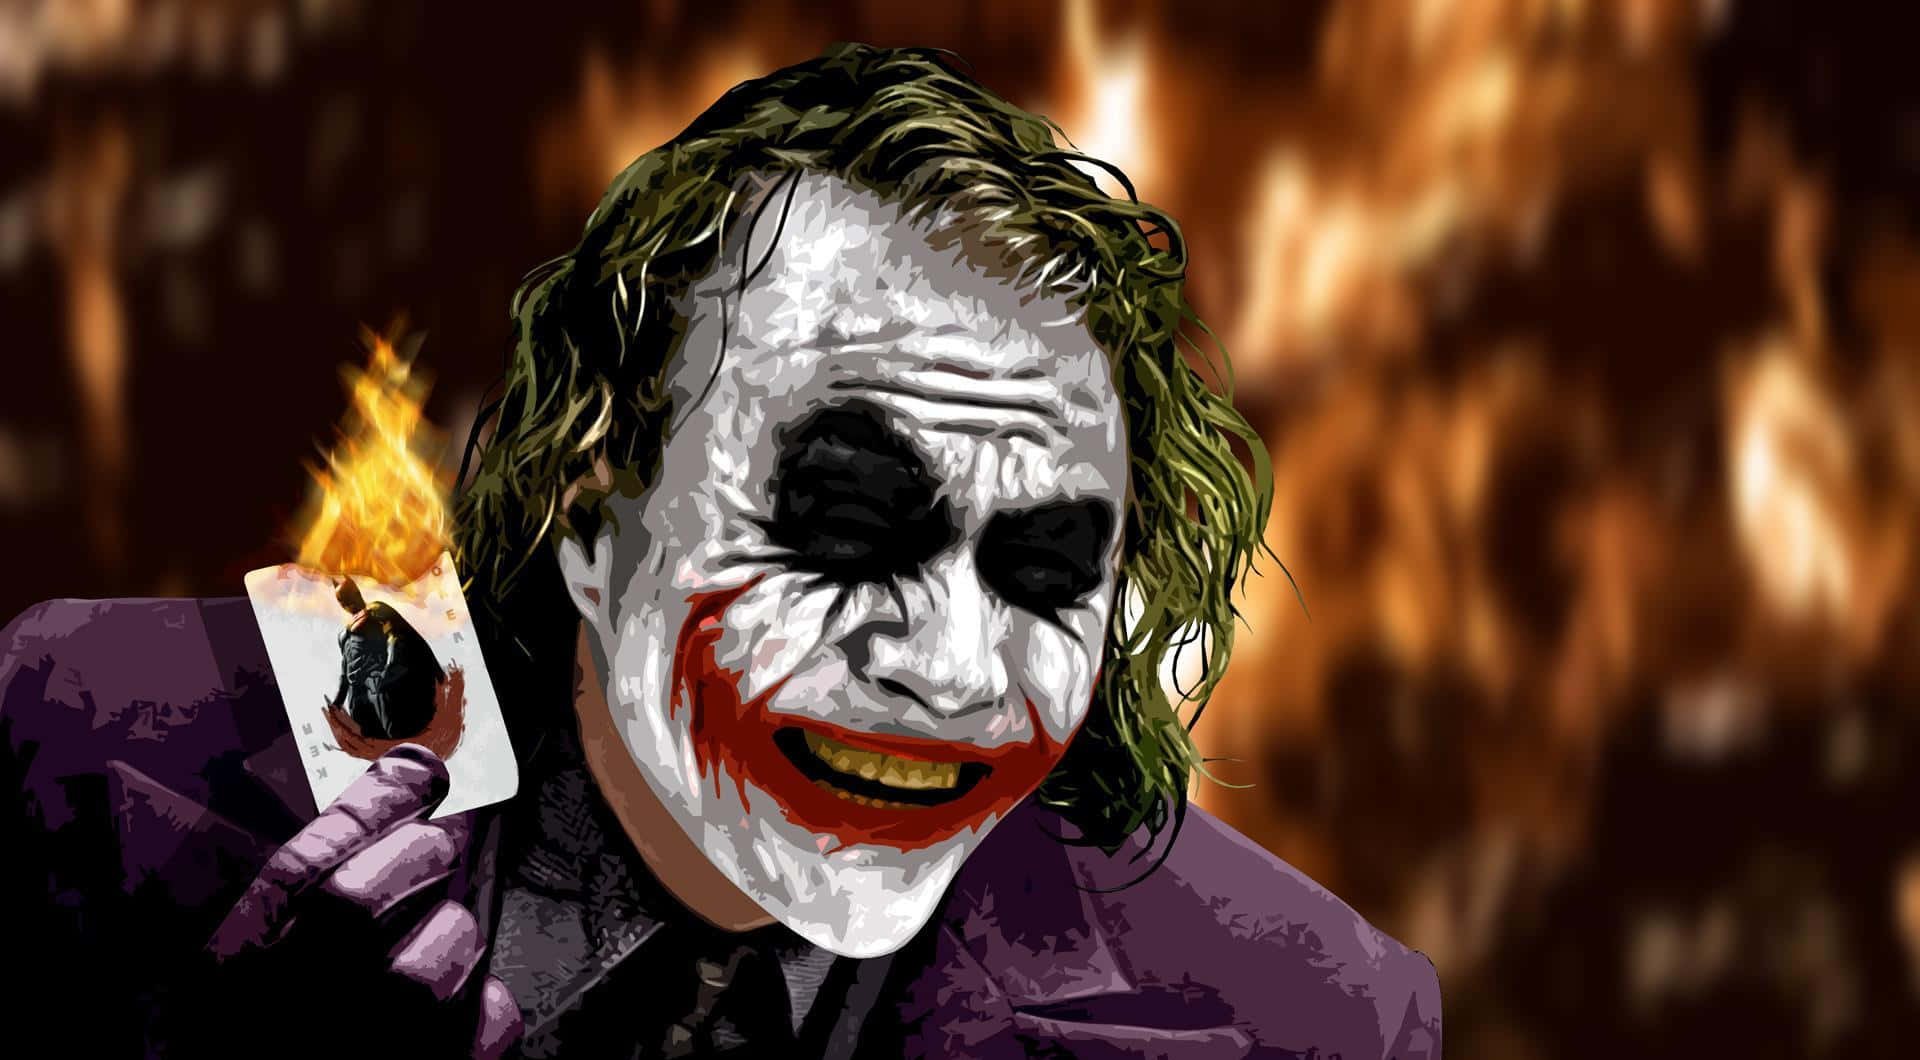 Sinister Joker Laughing in Vibrant Colors Wallpaper